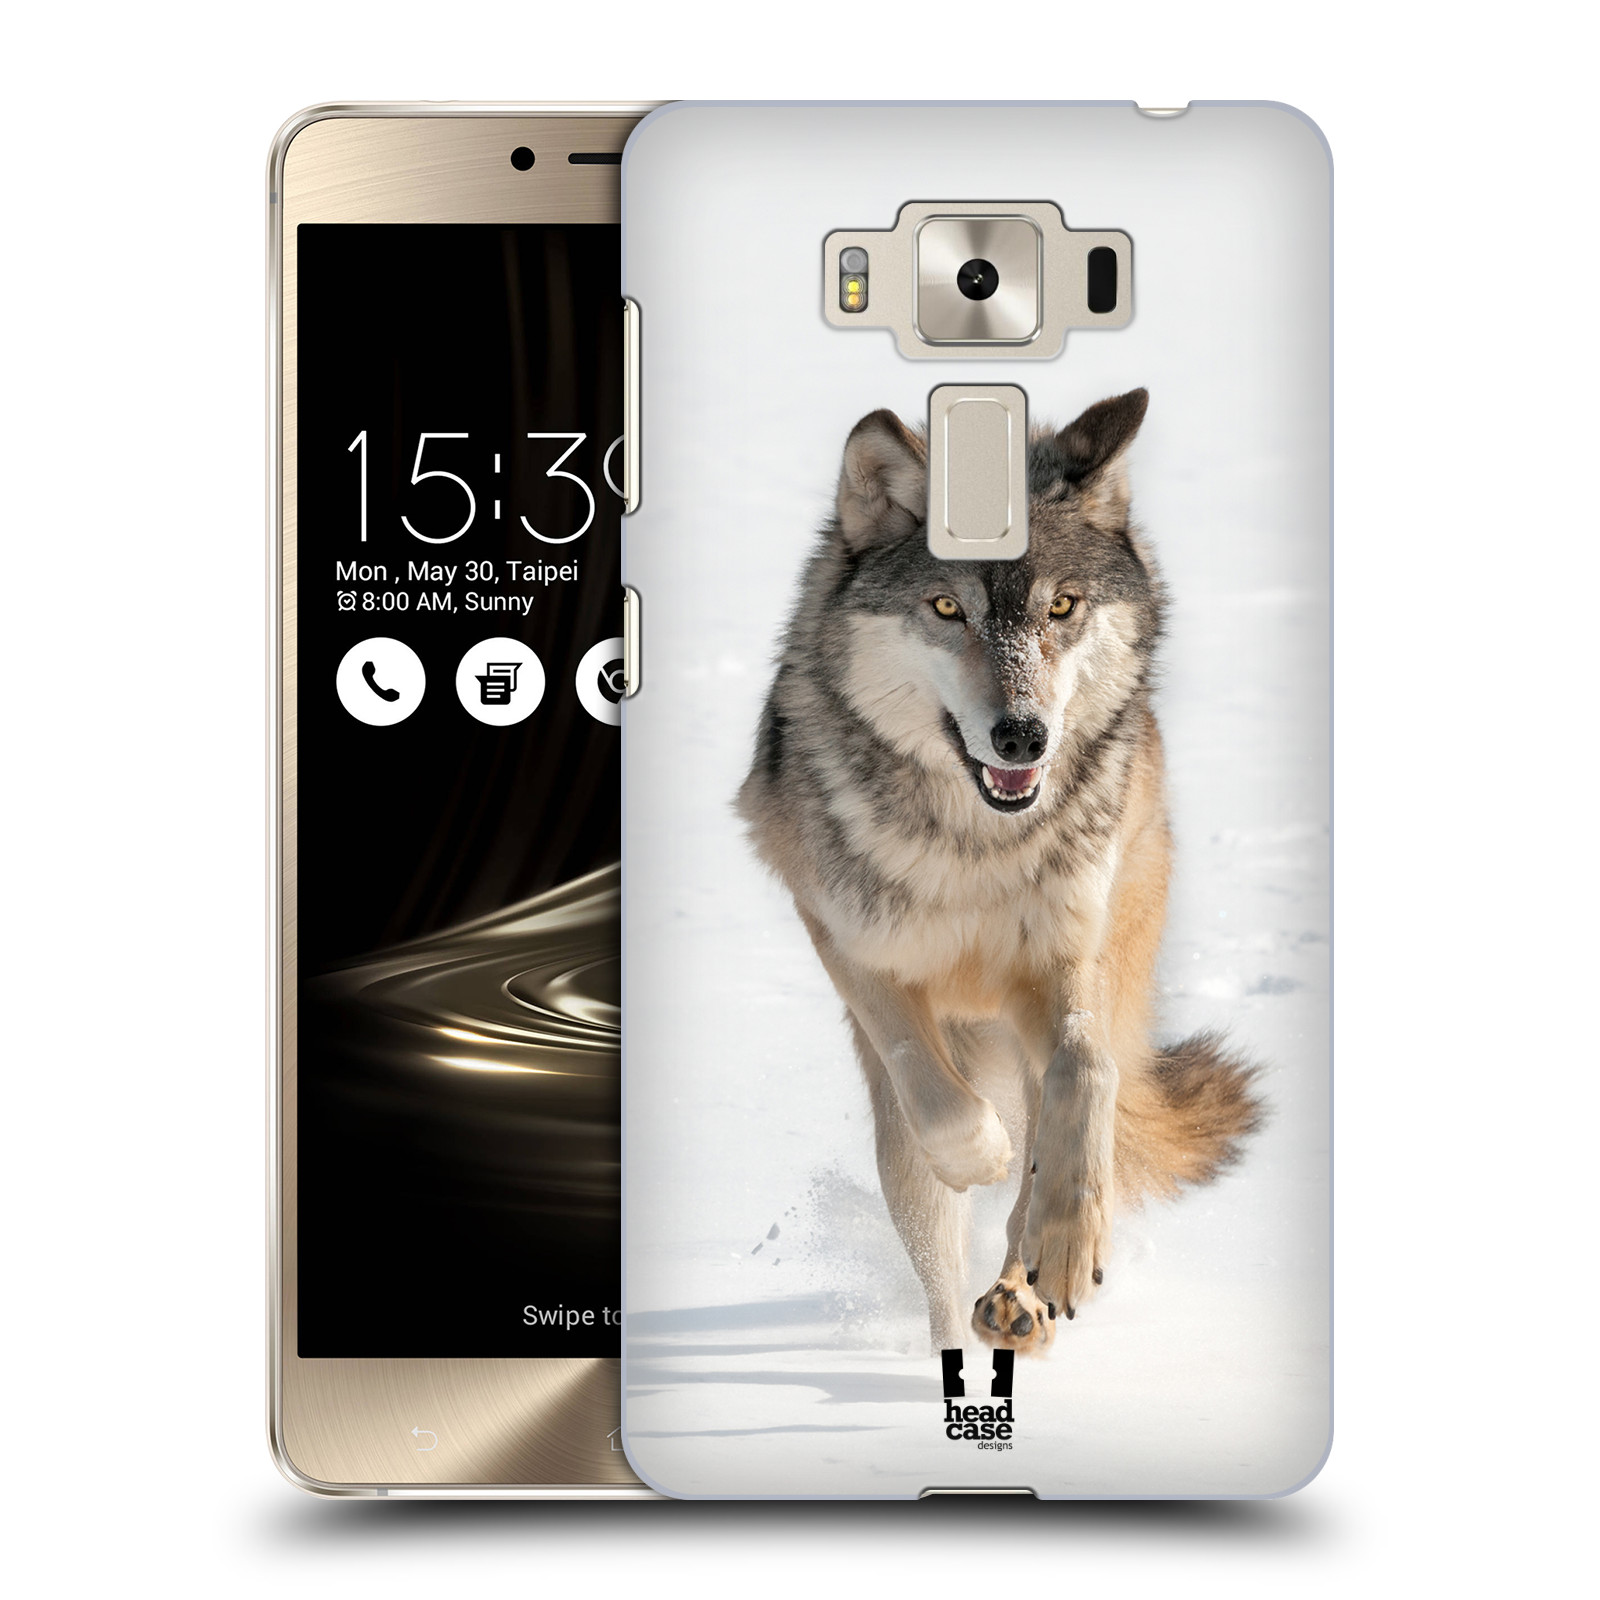 HEAD CASE plastový obal na mobil Asus Zenfone 3 DELUXE ZS550KL vzor Divočina, Divoký život a zvířata foto BĚŽÍCÍ VLK